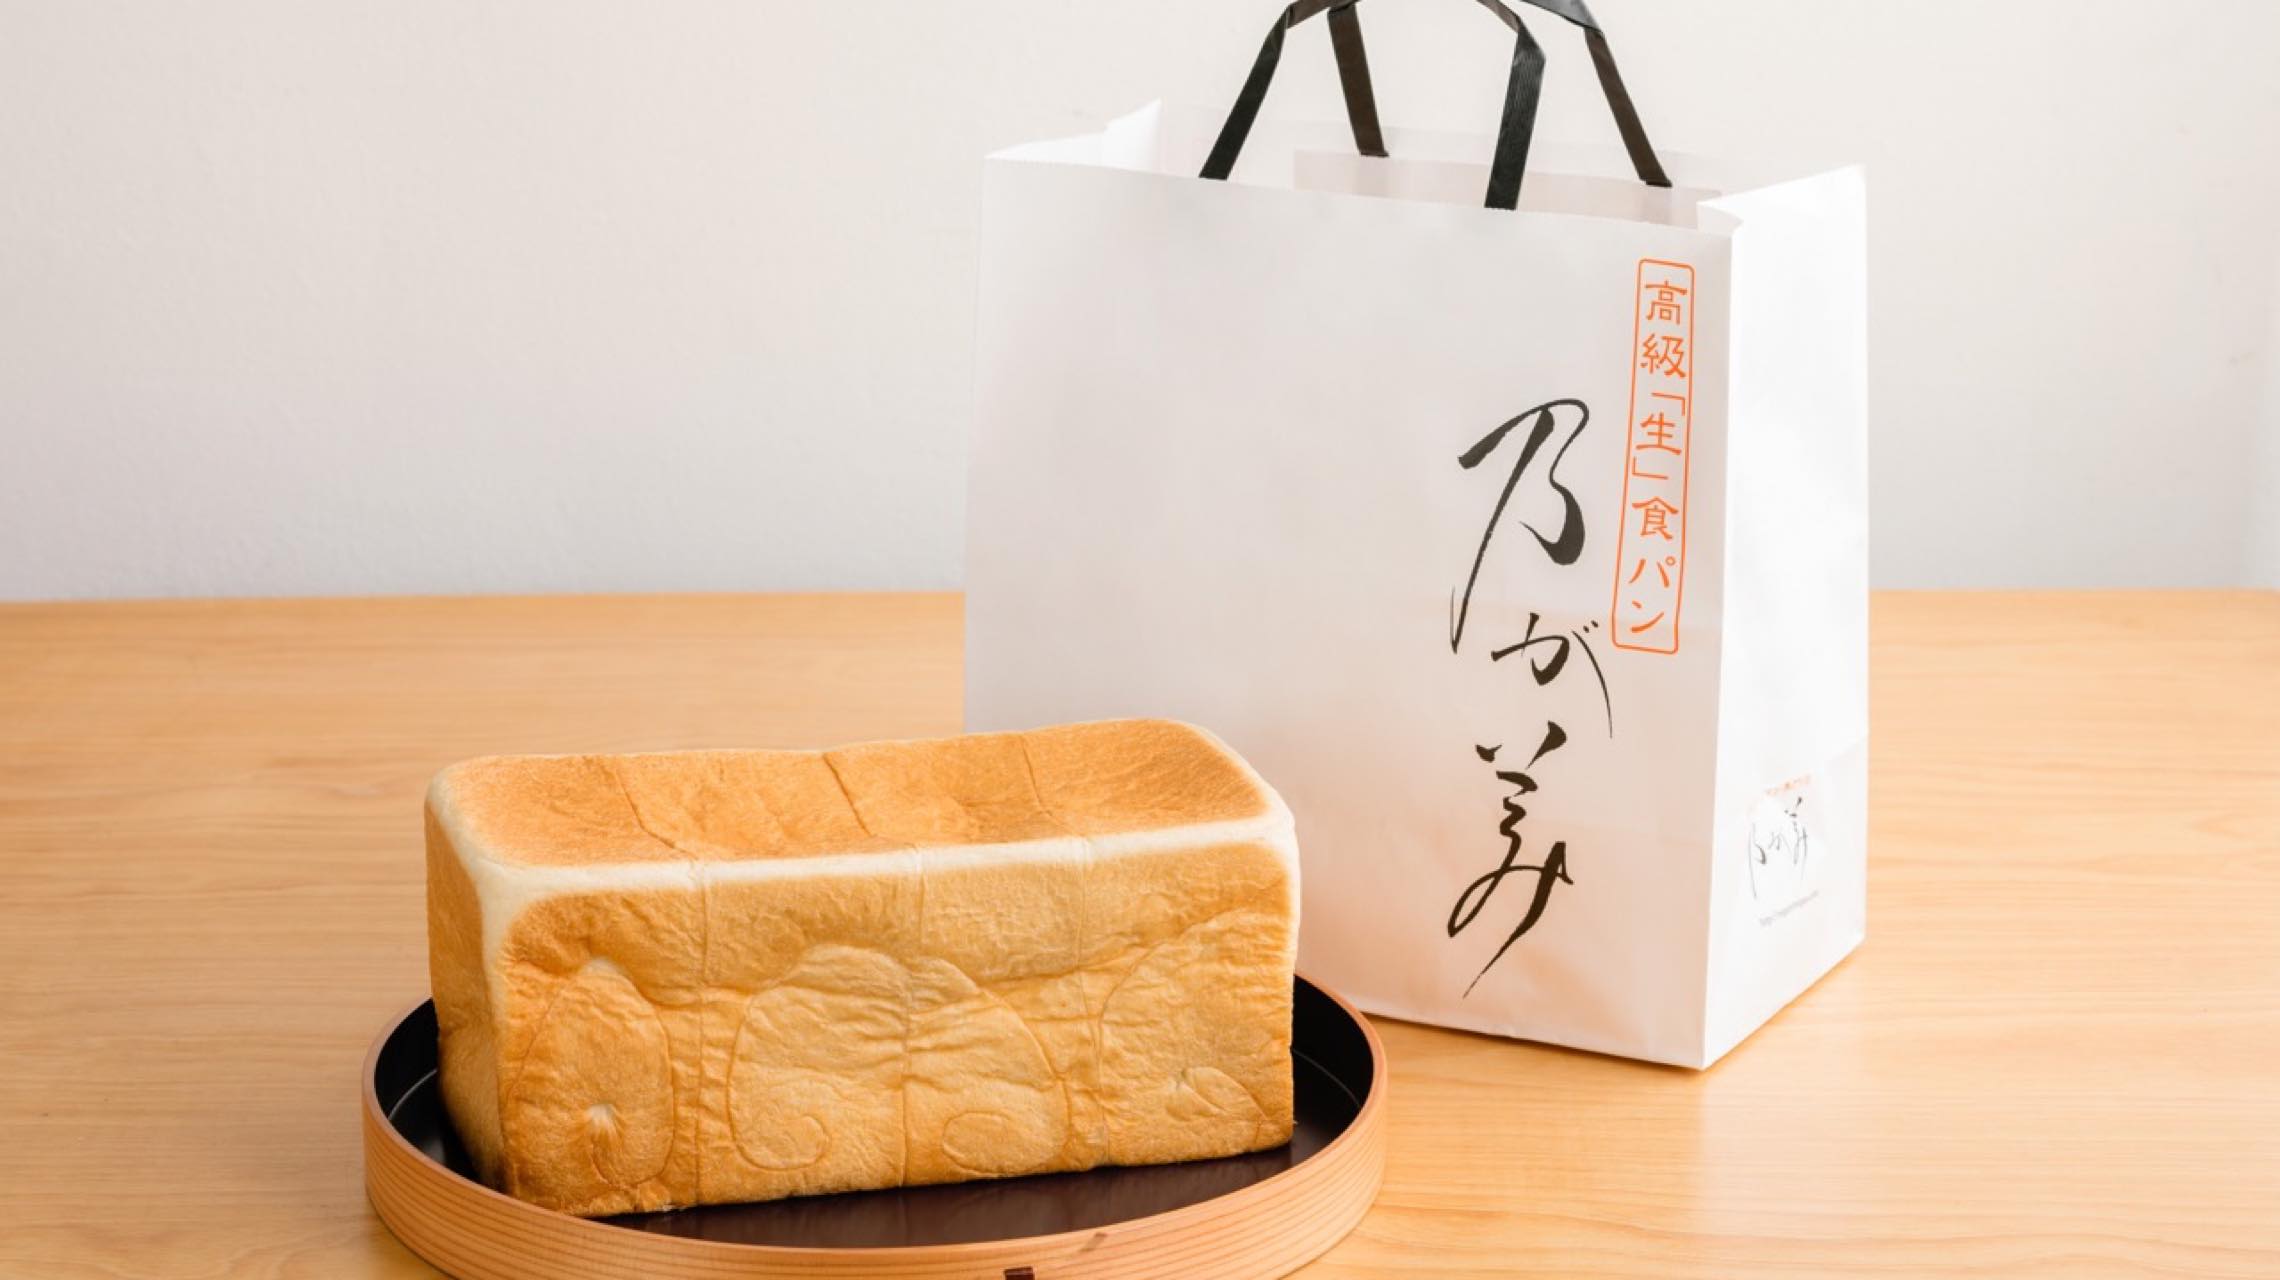 東京人だけが知らなかった、行列のできる人気食パン。「乃が美」が麻布十番にオープン